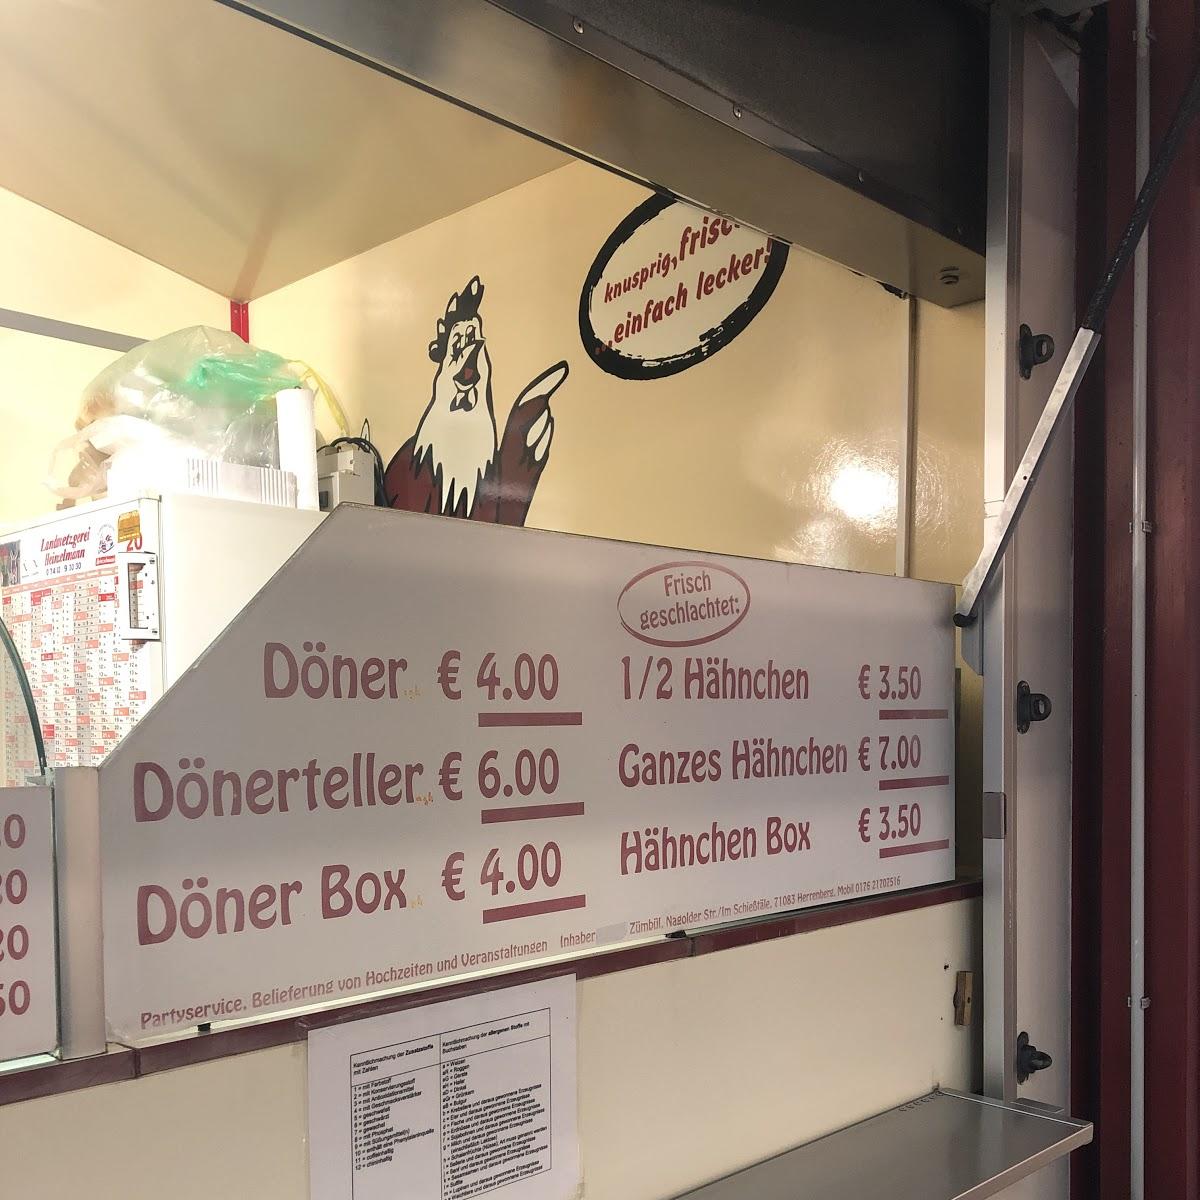 Restaurant "Grillhähnchen und Döner" in Herrenberg